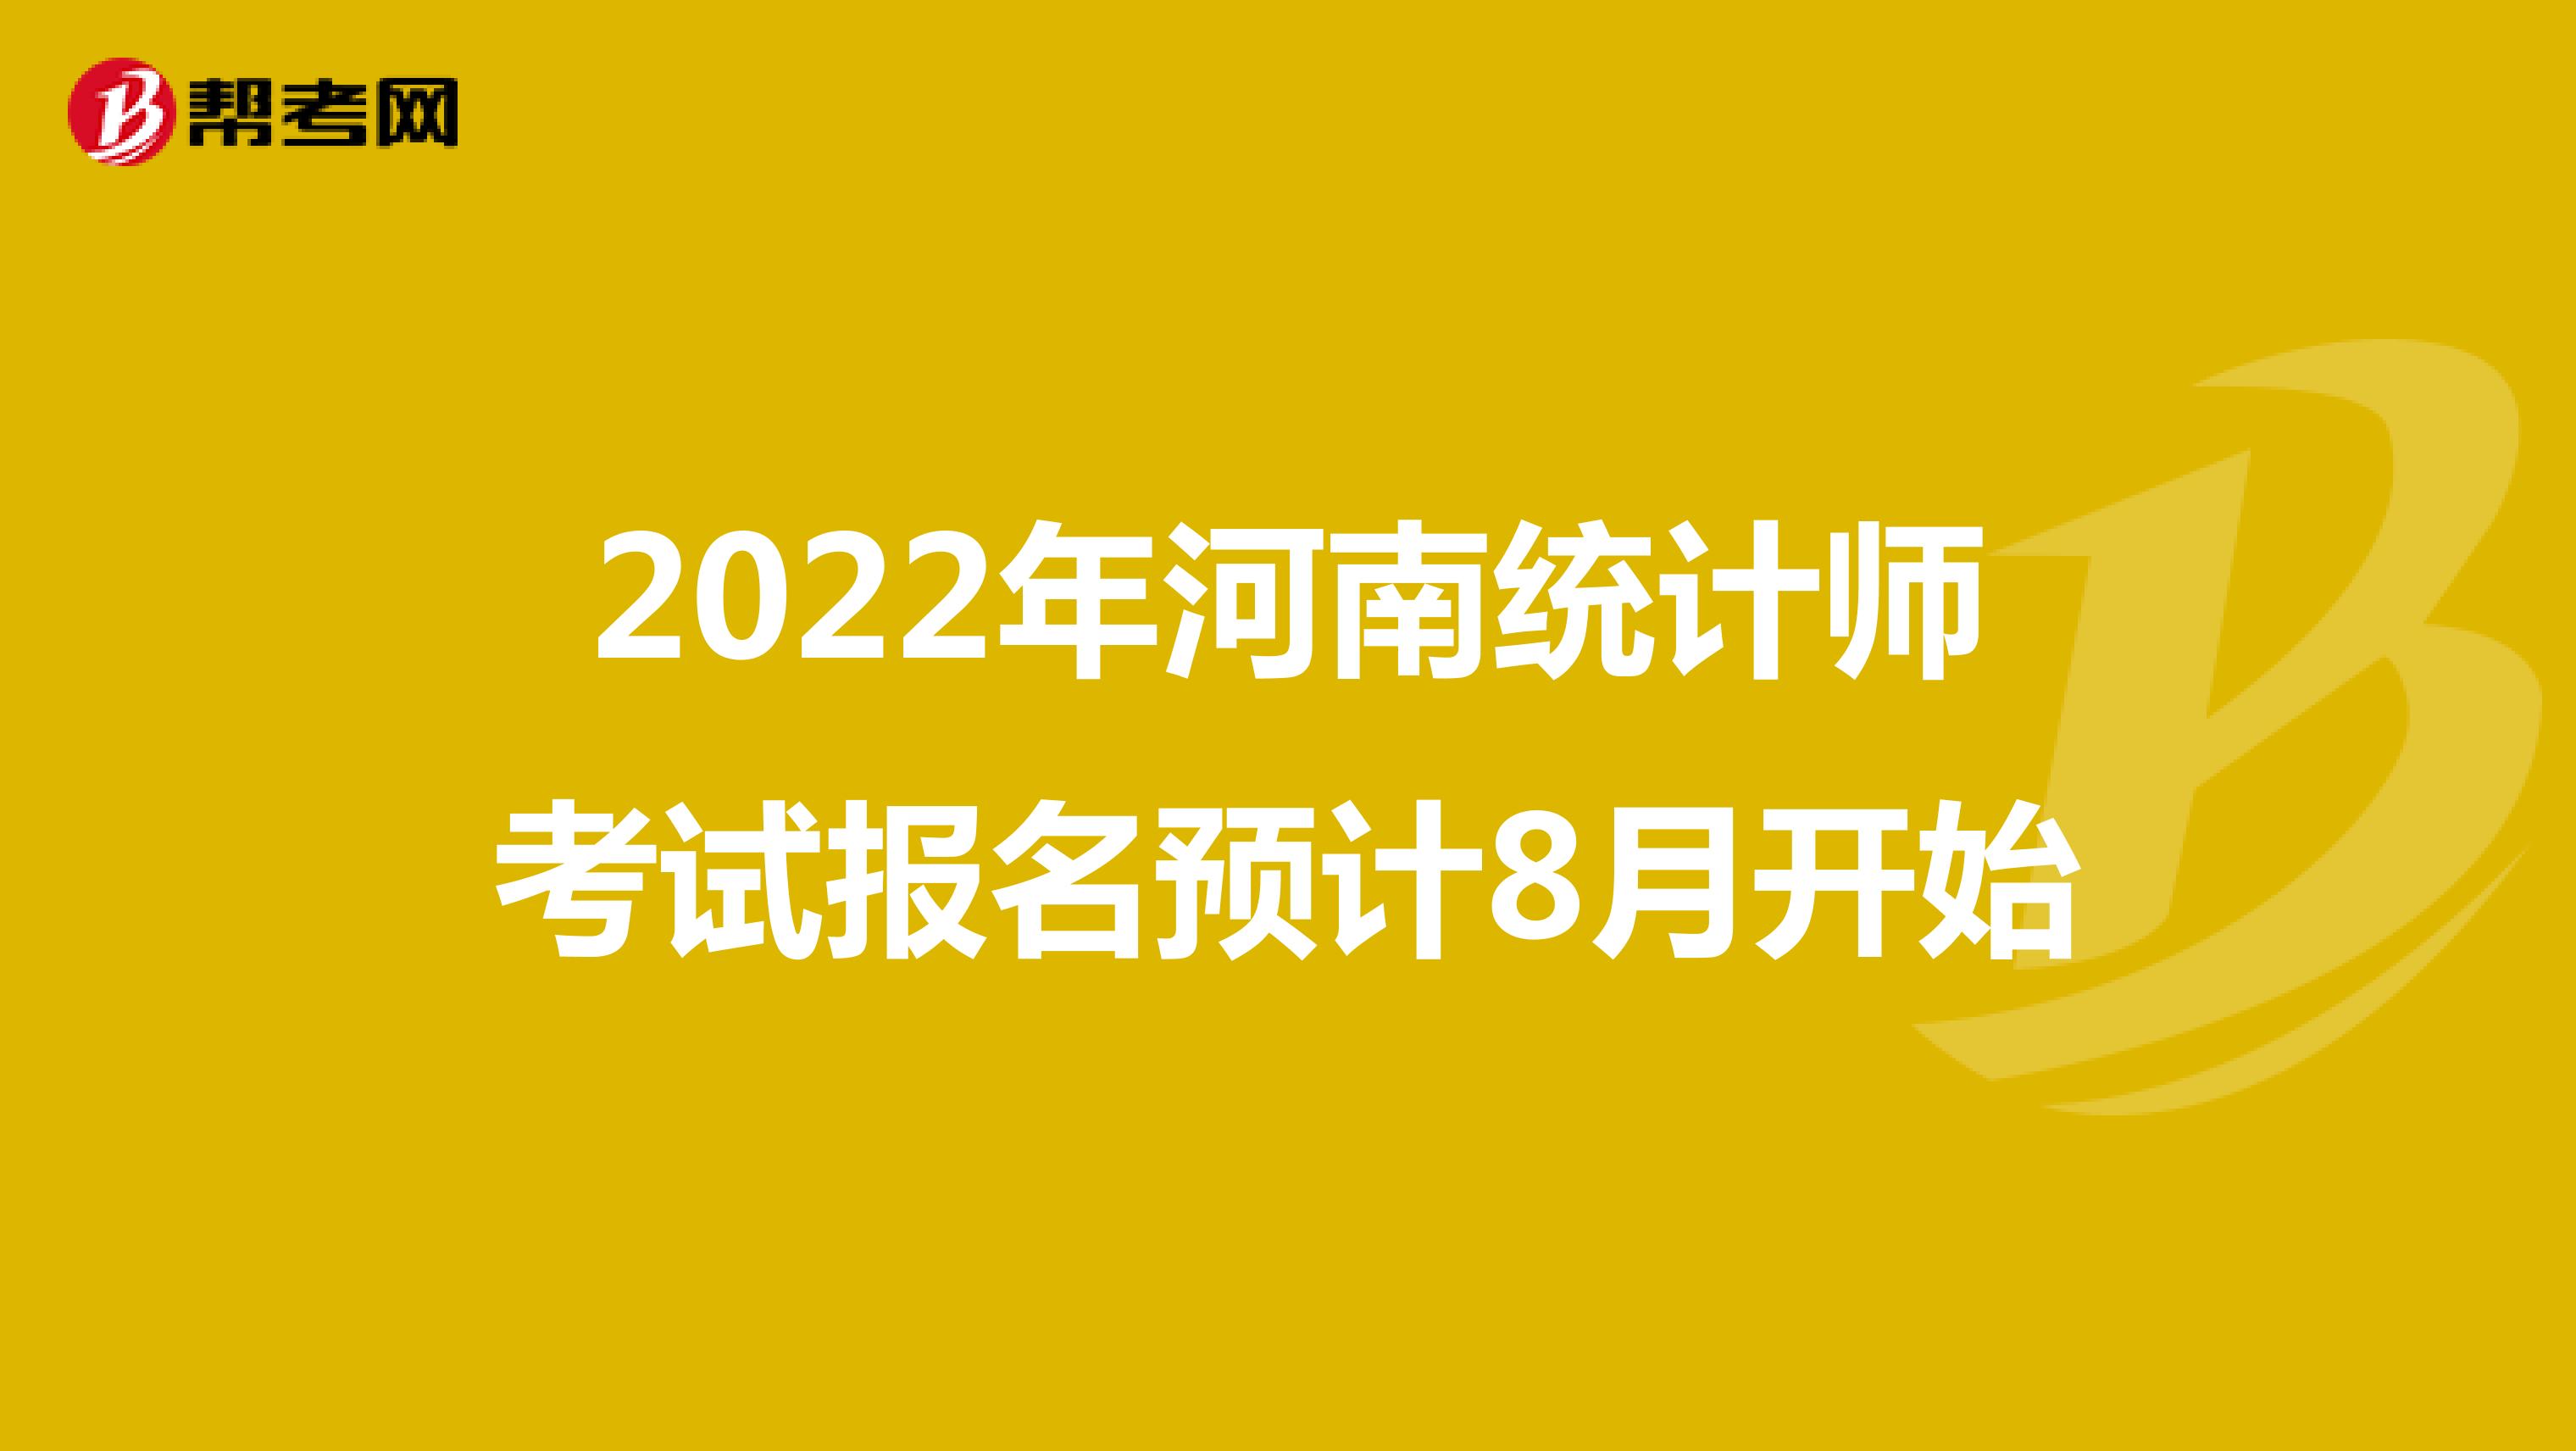 2022年河南统计师考试报名预计8月开始